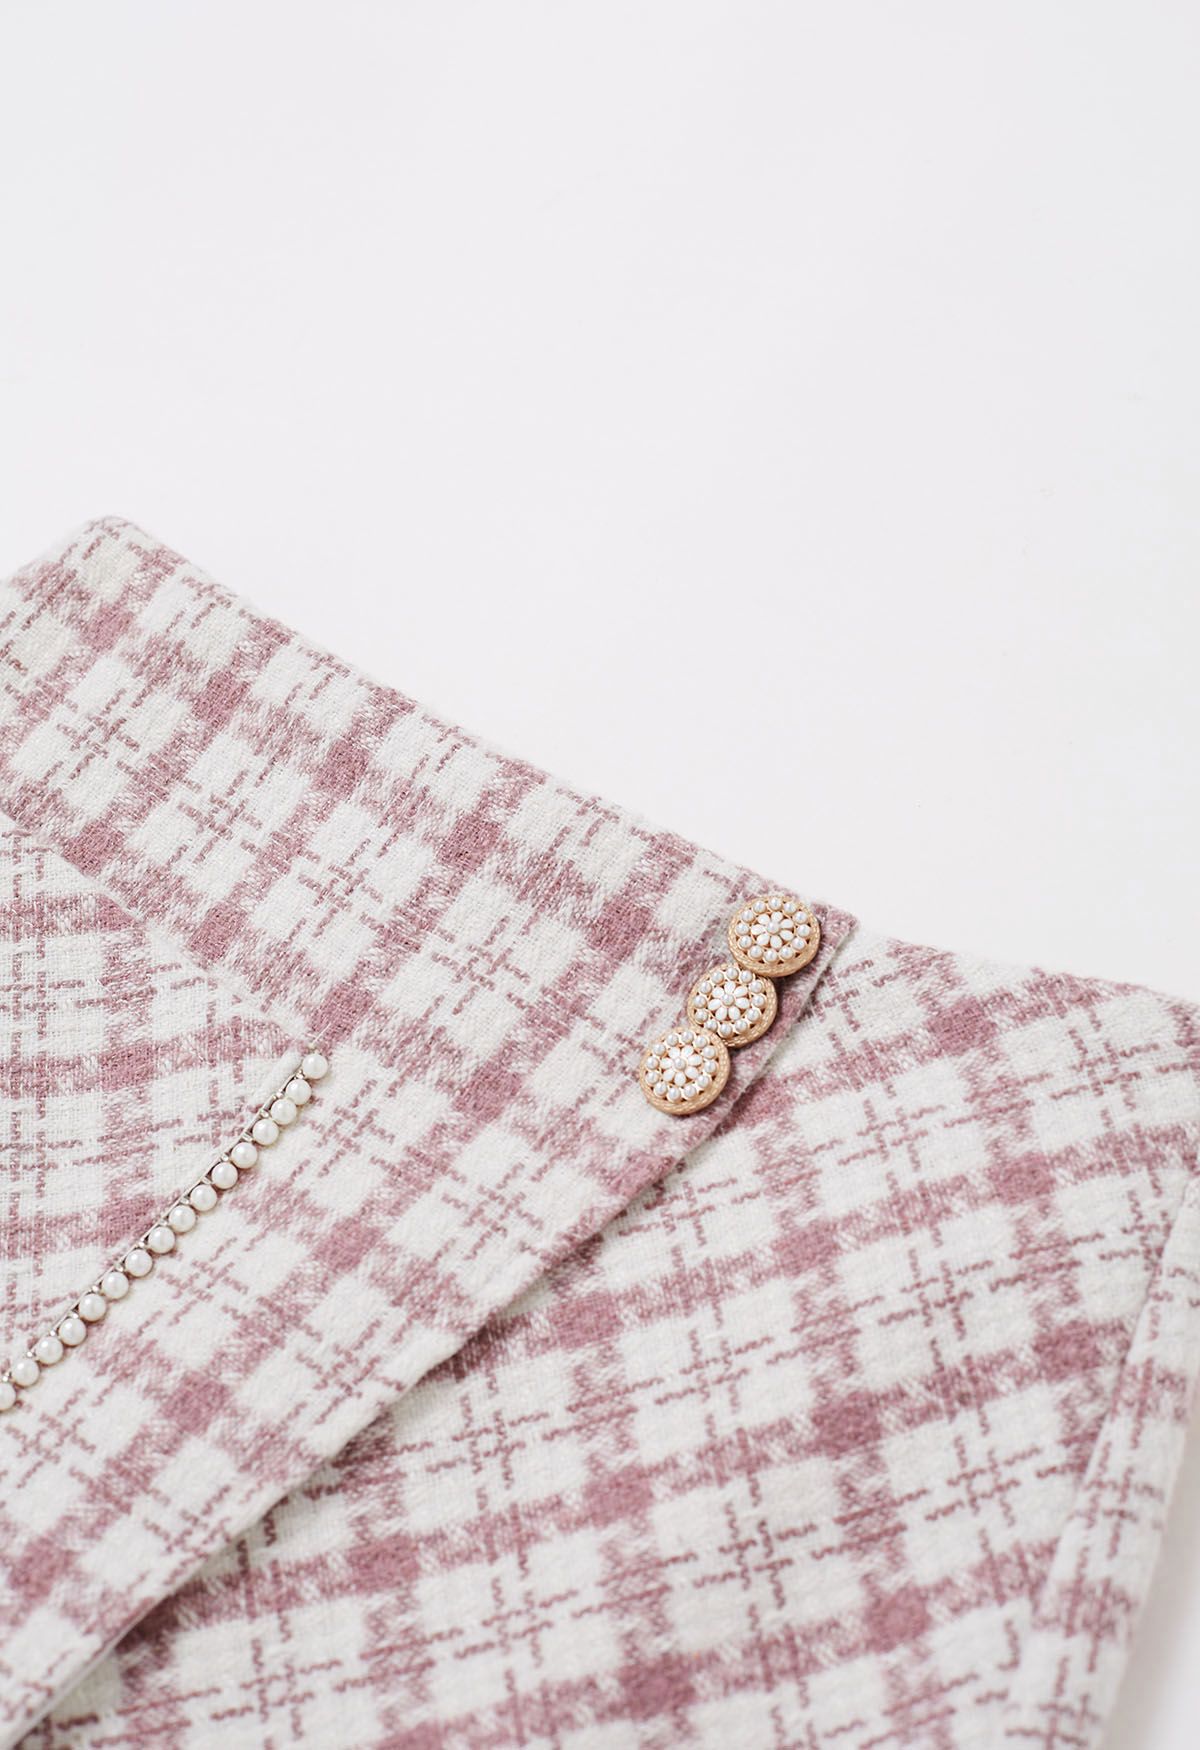 Falda con solapa de tweed a cuadros y bolsillo de parche en rosa